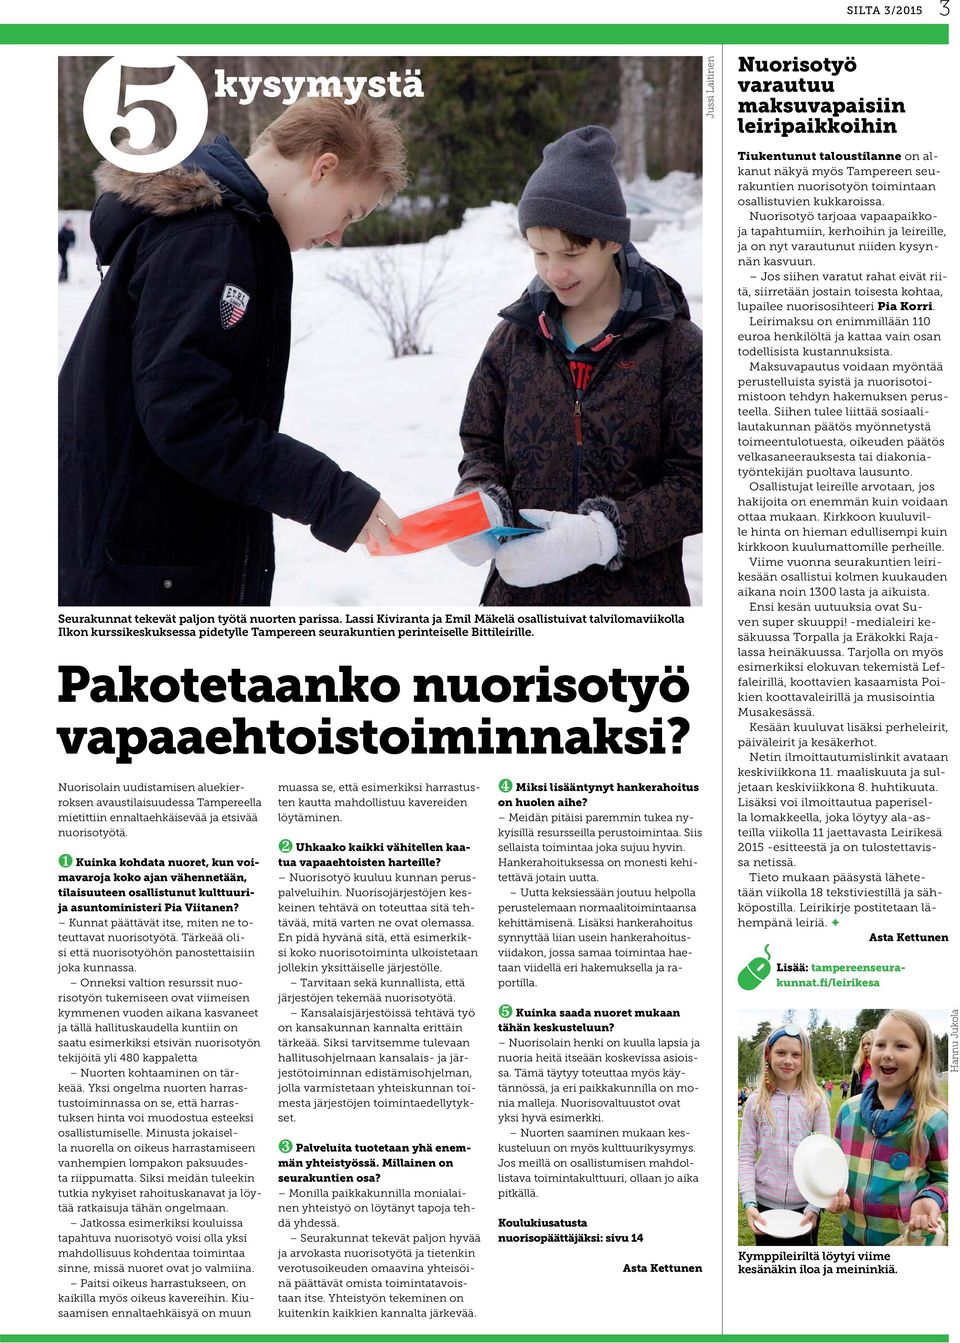 Nuorisolain uudistamisen aluekierroksen avaustilaisuudessa Tampereella mietittiin ennaltaehkäisevää ja etsivää nuorisotyötä.